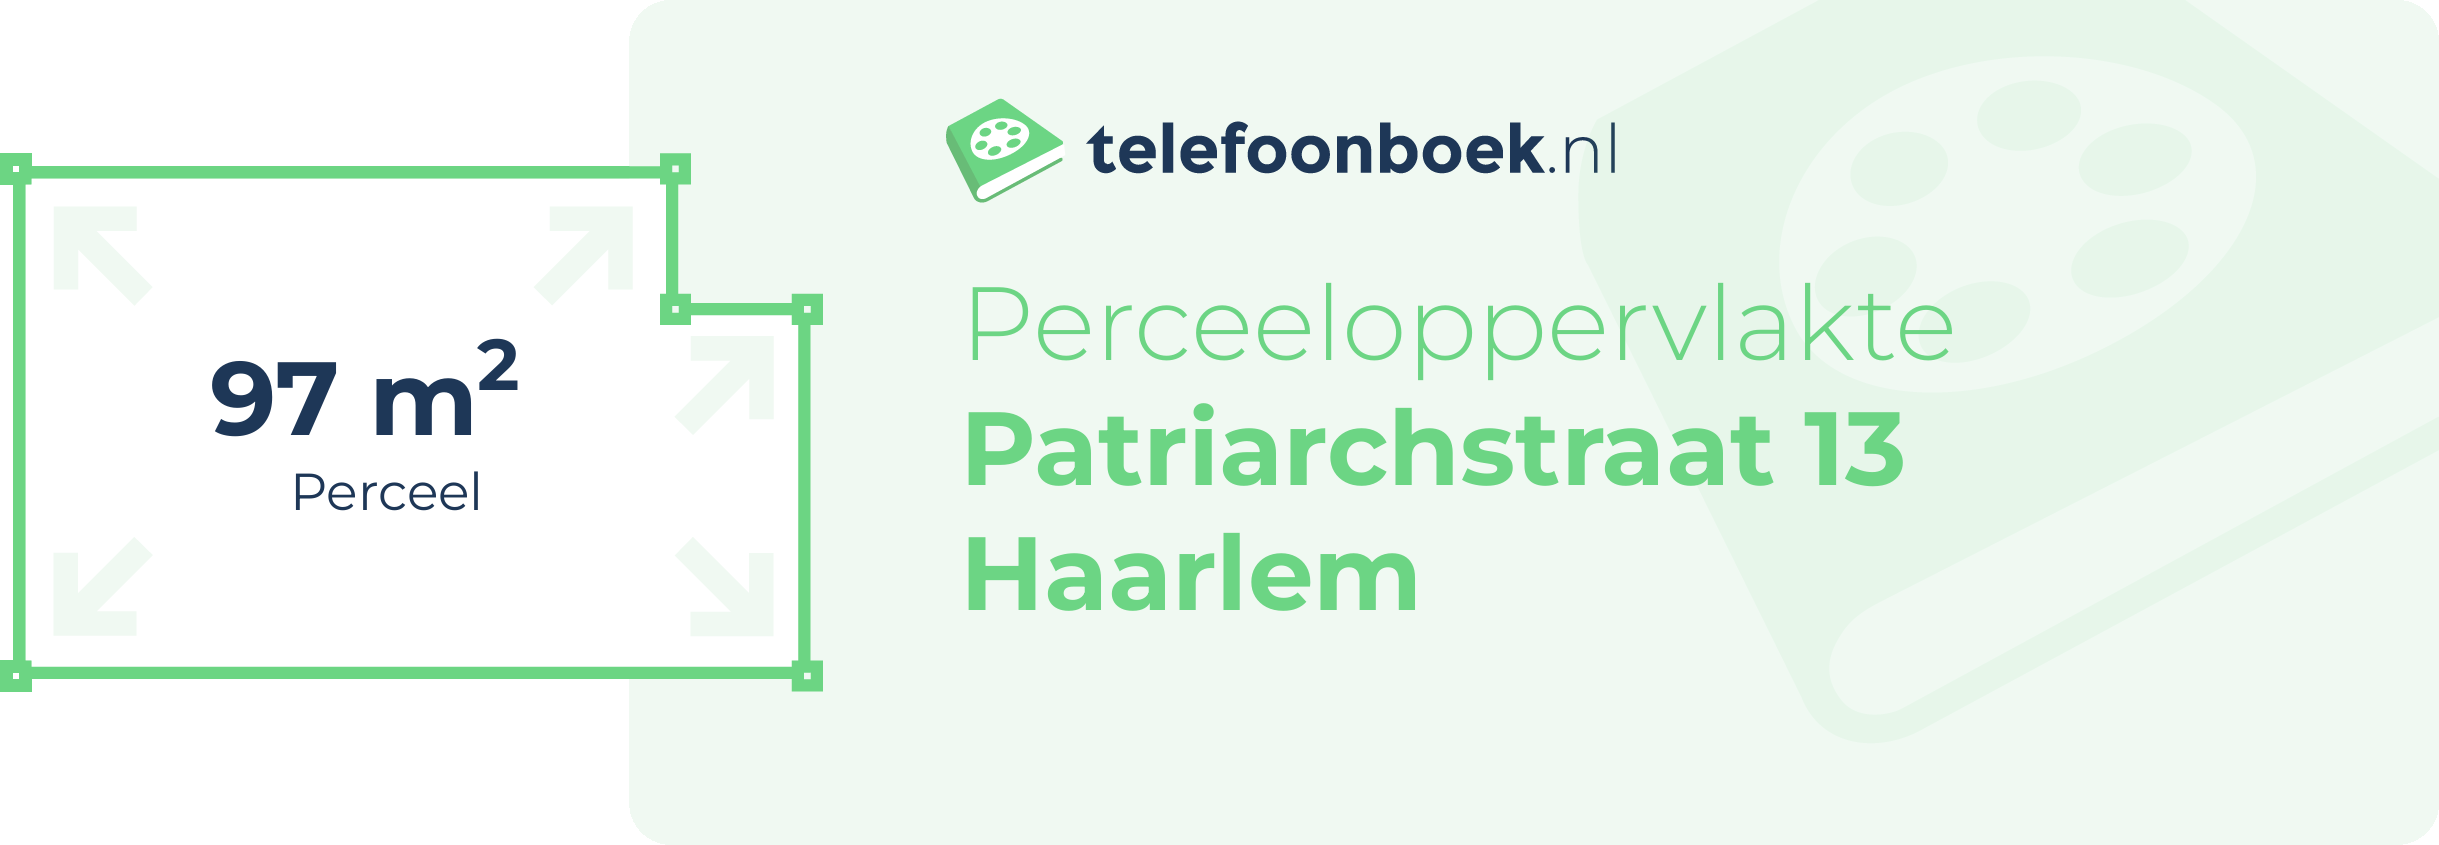 Perceeloppervlakte Patriarchstraat 13 Haarlem